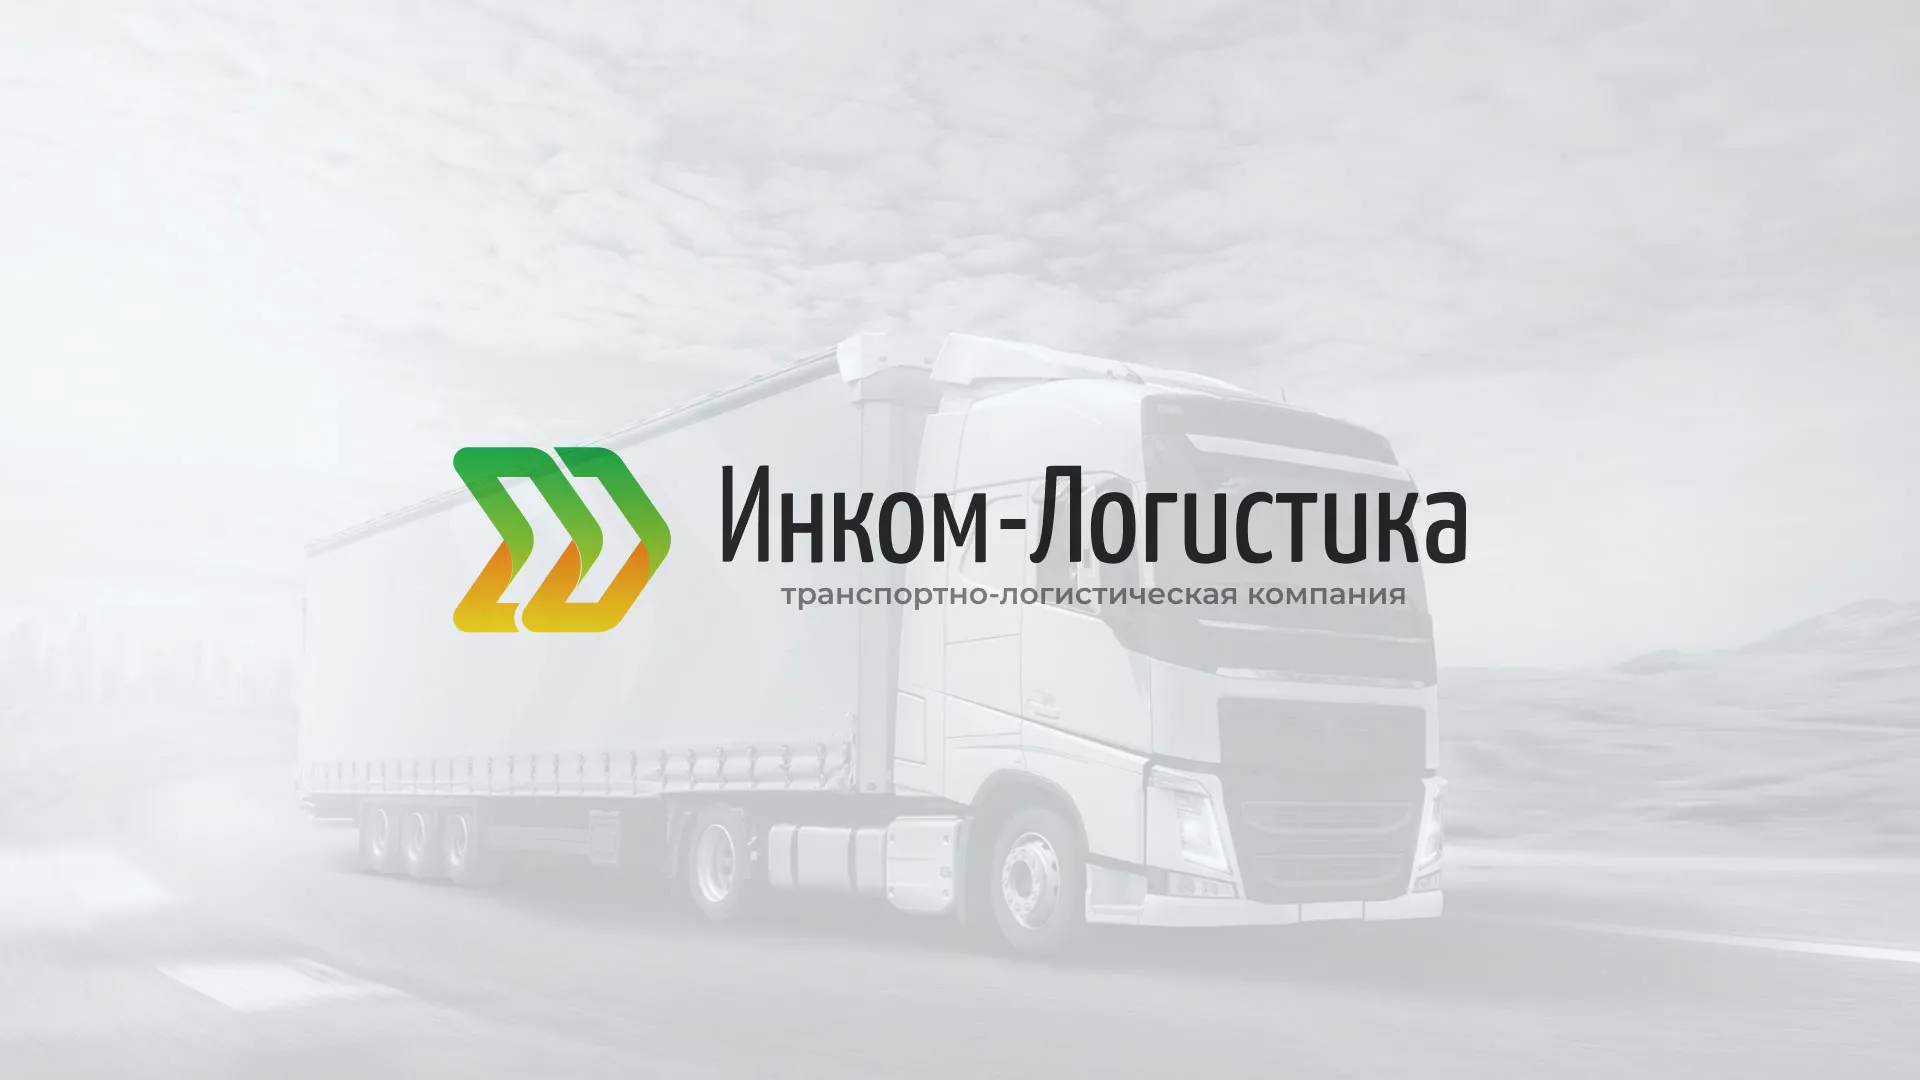 Разработка логотипа и сайта компании «Инком-Логистика» в Торопце